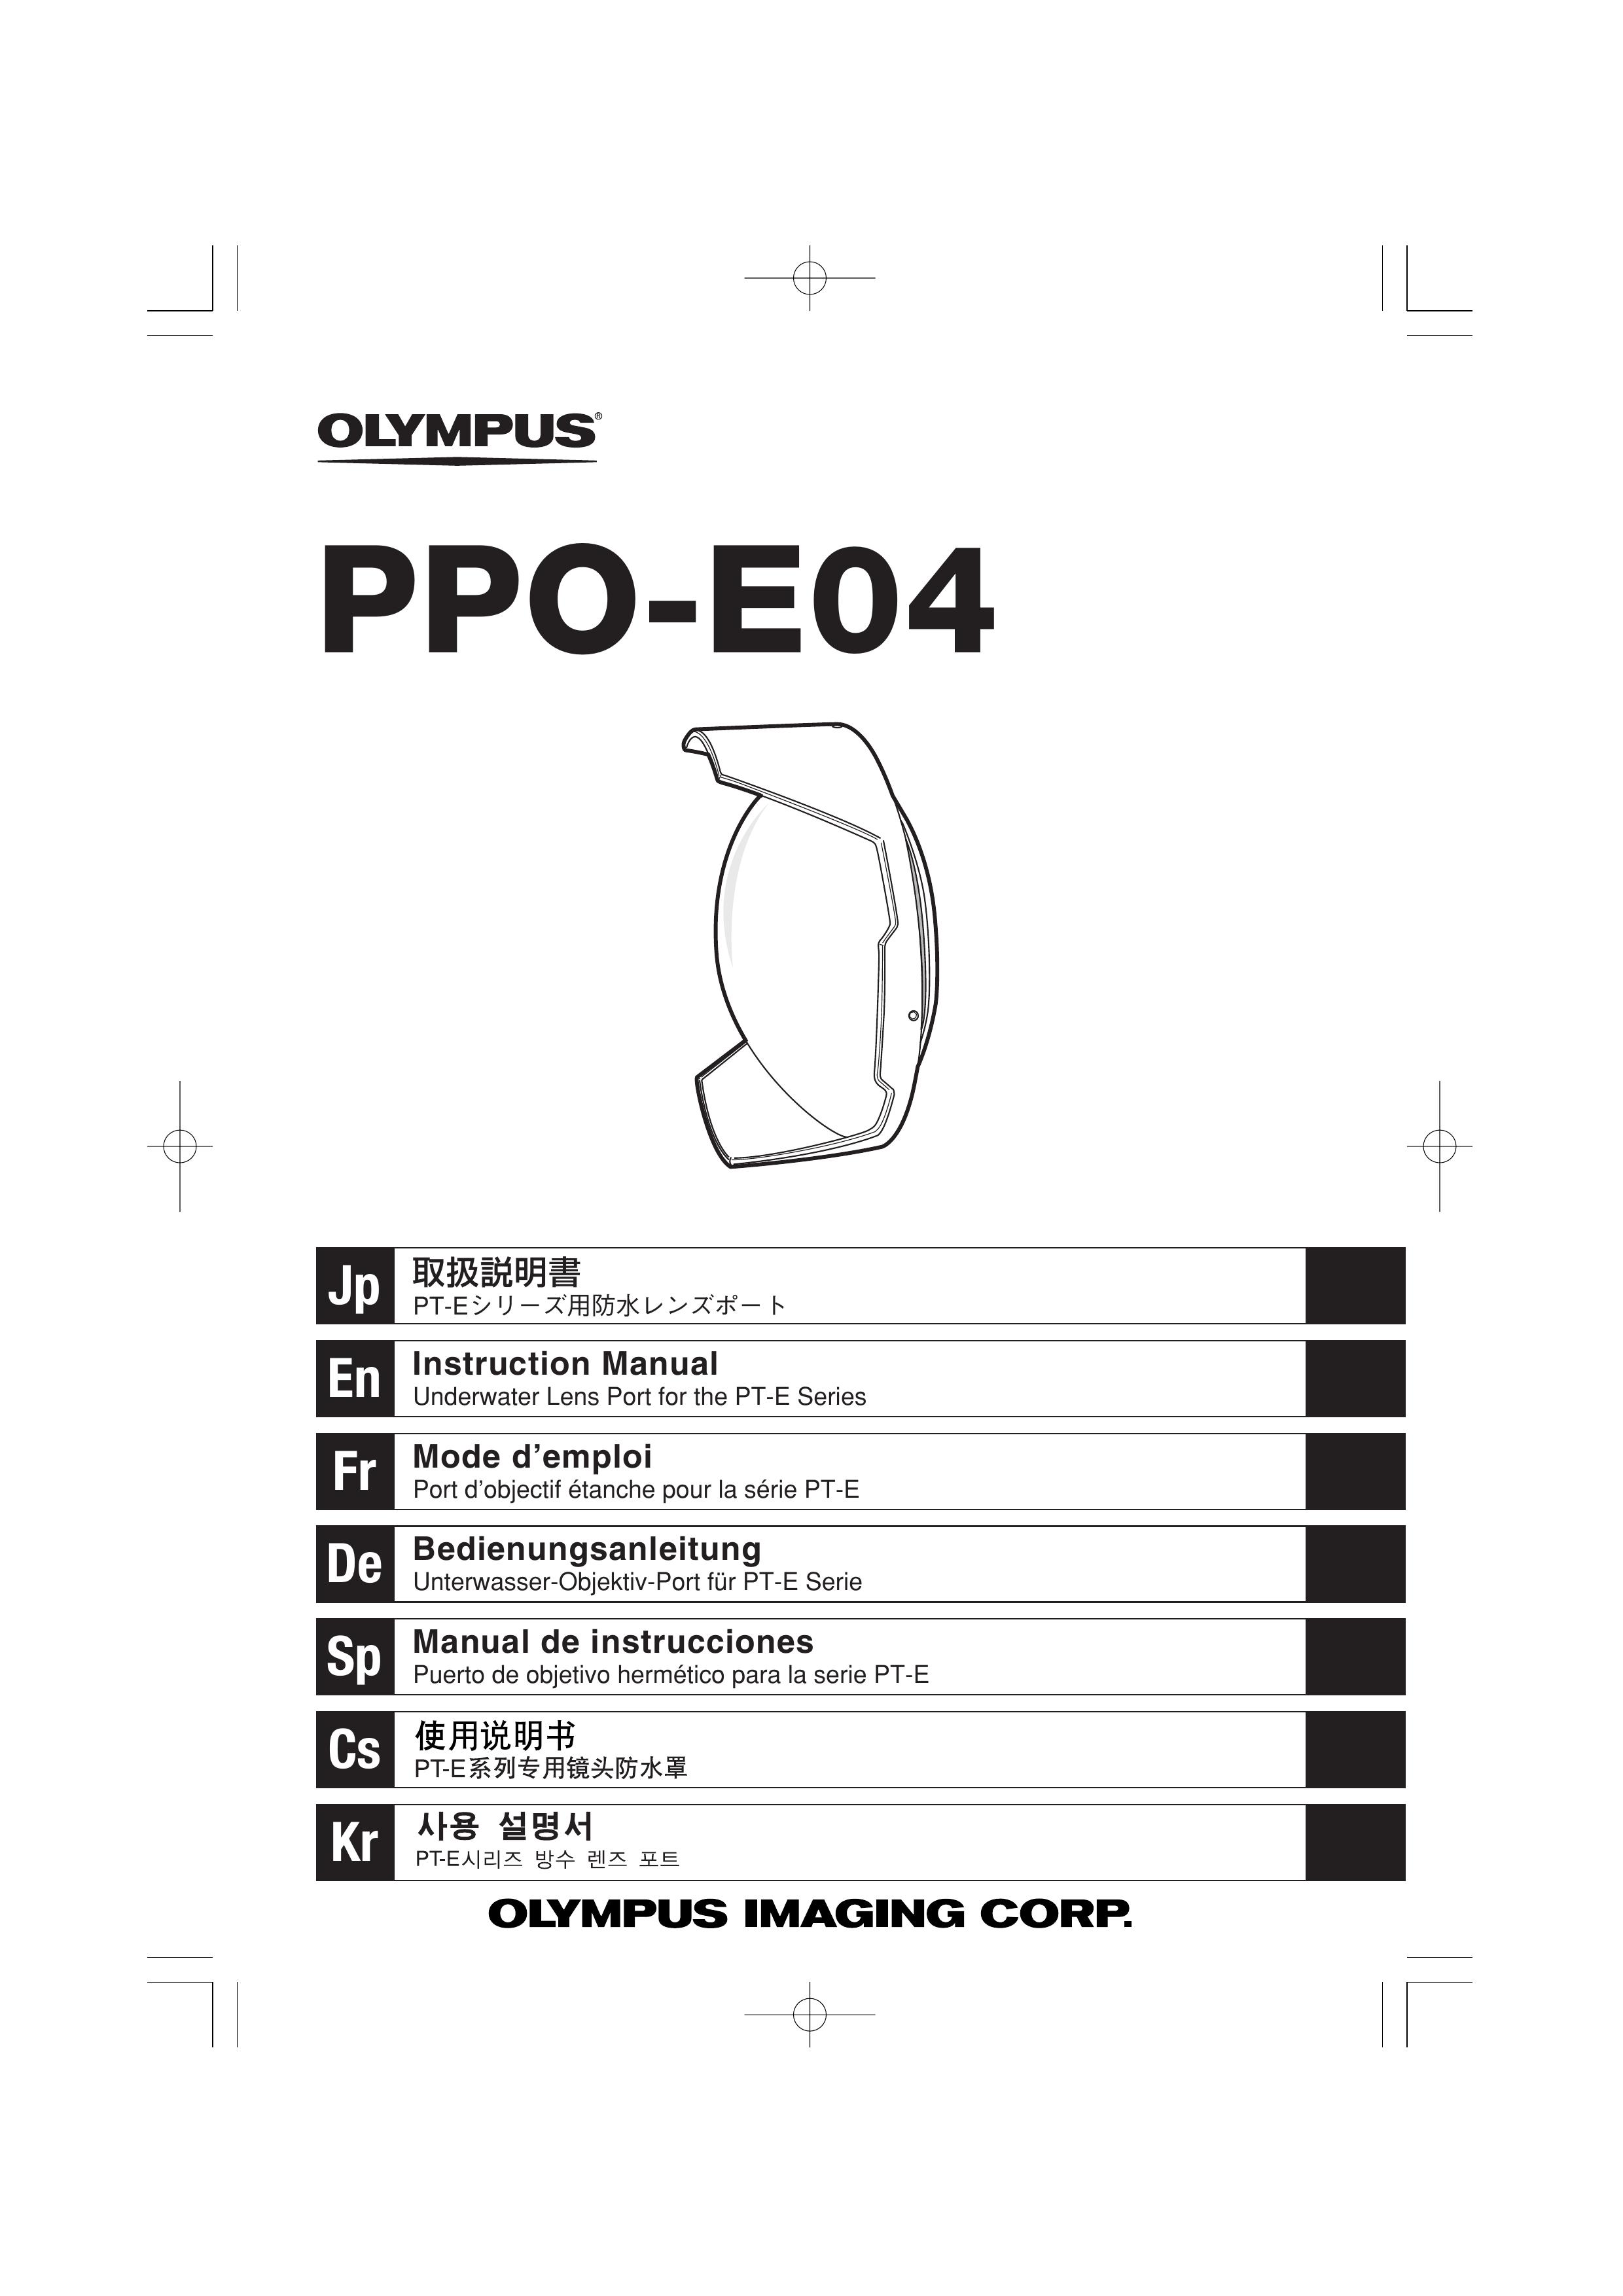 Olympus PPO-E04 Camera Accessories User Manual